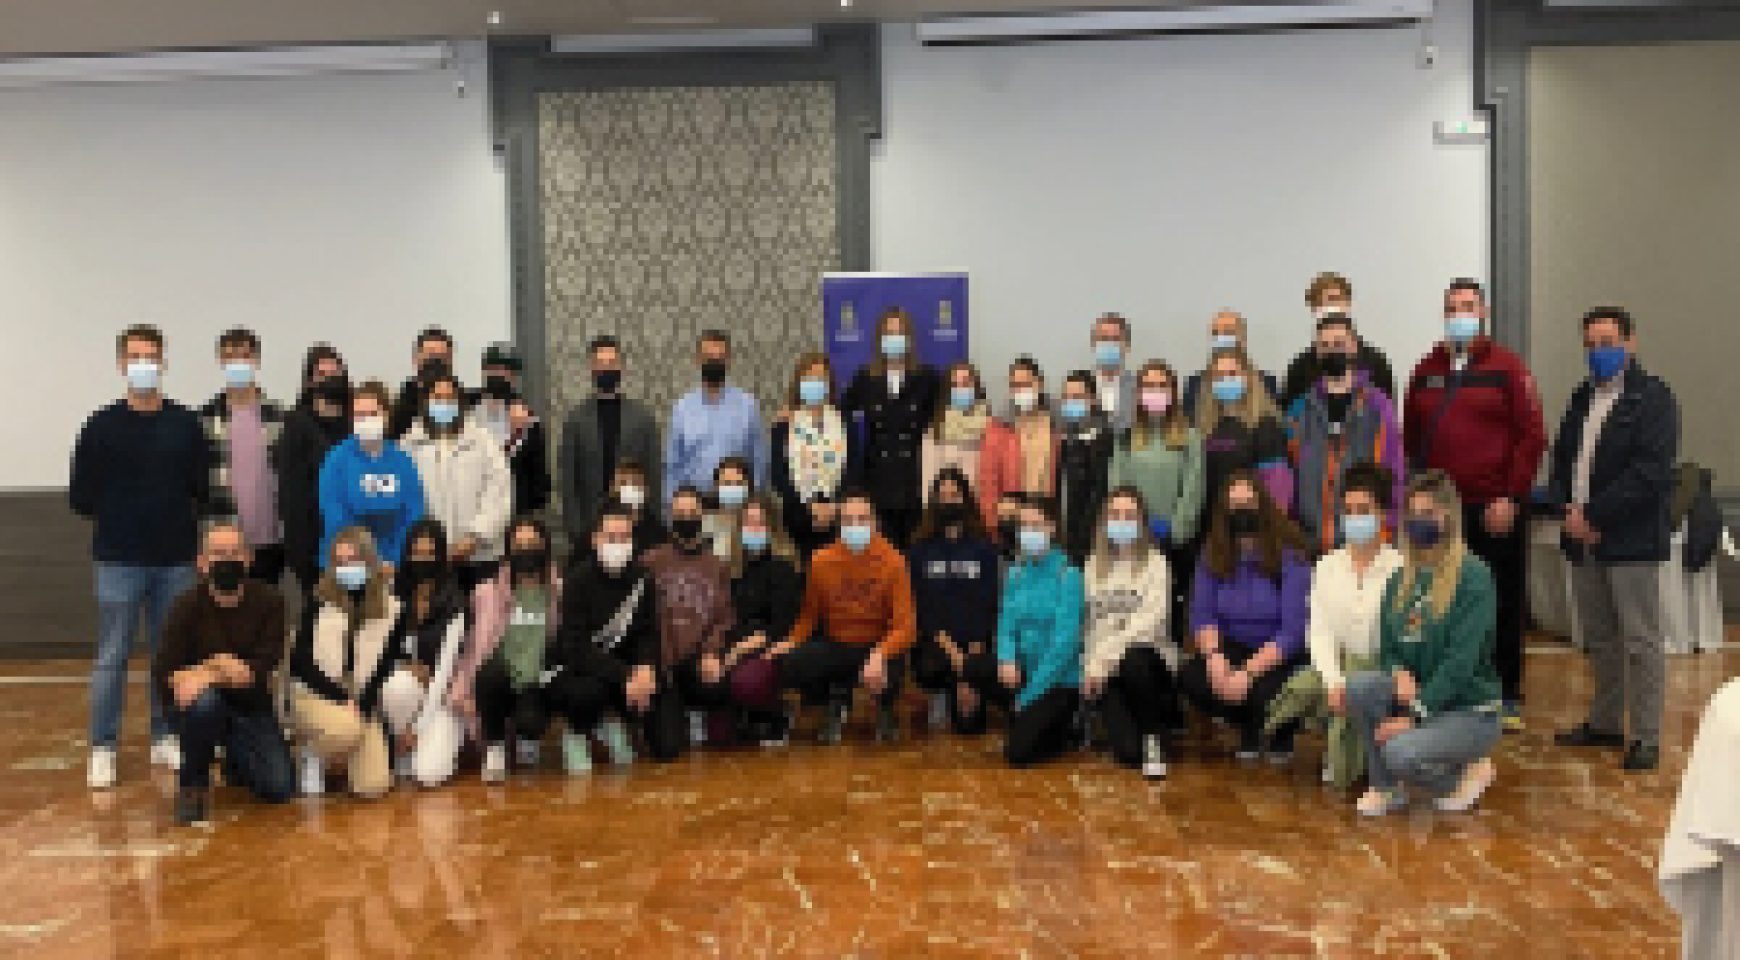 Los estudiantes de Turismo de la UMU visitan el cañón de Almadenes y su entorno